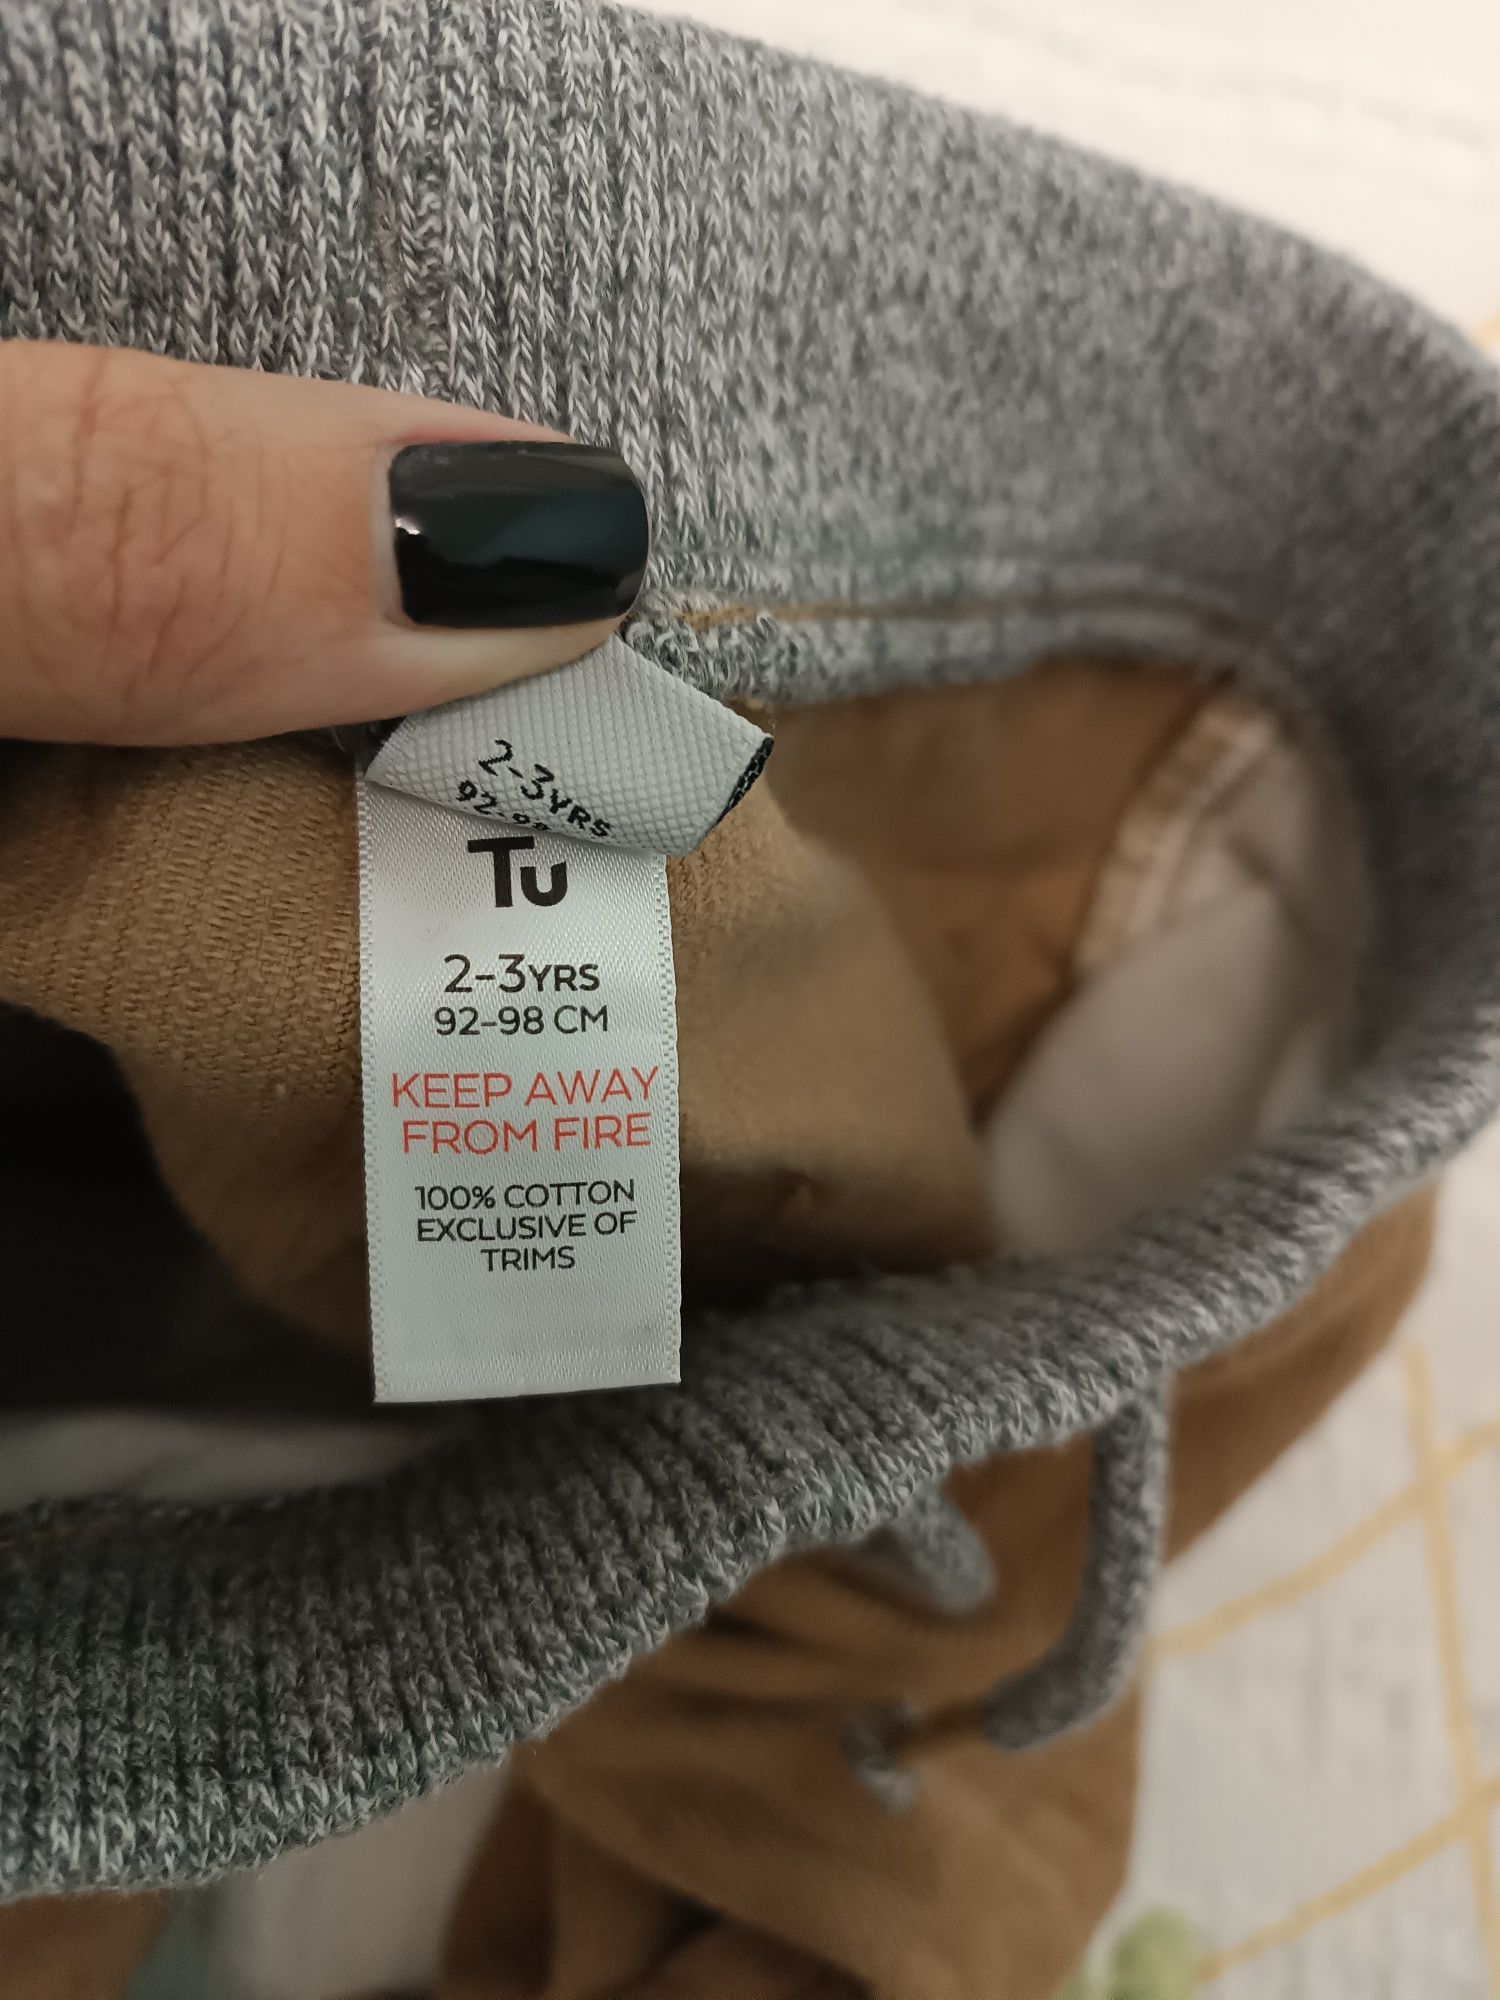 Джинсы, вельветовые штаны фирма TU на возраст 2-3  года .на рост 92-98